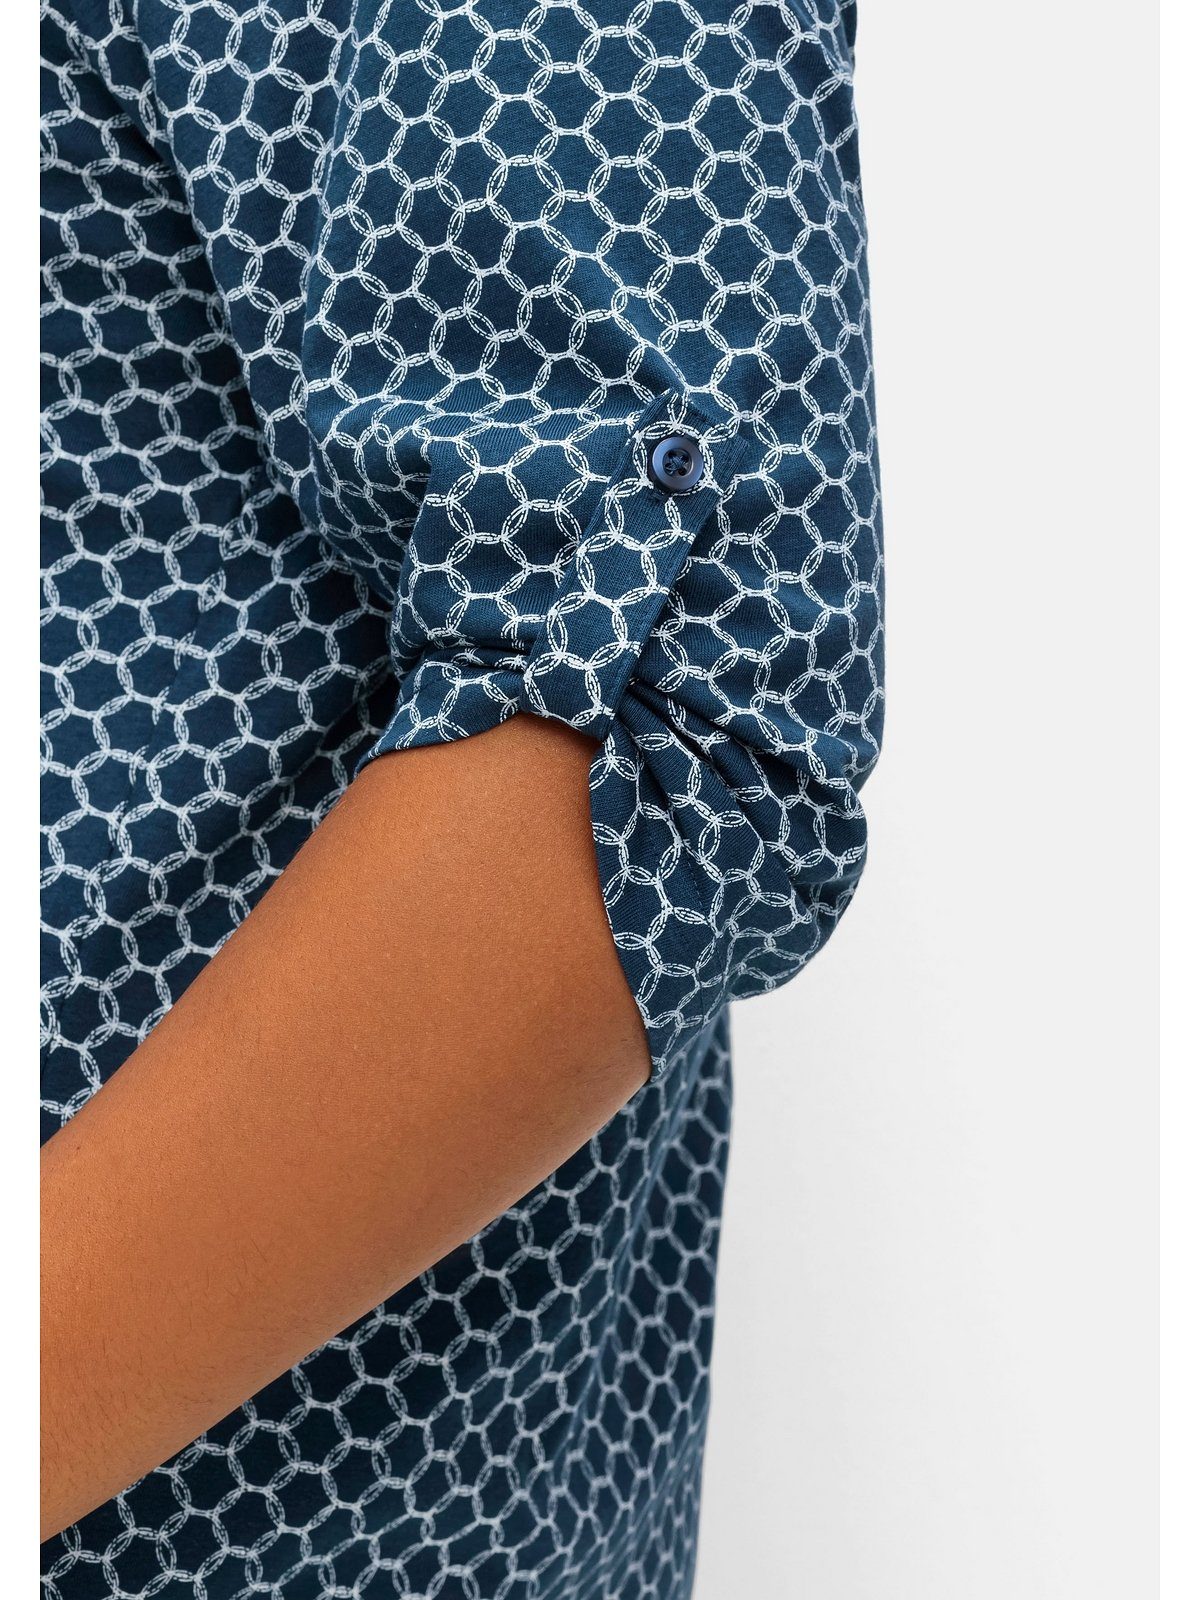 dunkelblau 3/4-Arm-Shirt grafischem bedruckt mit Sheego Große Alloverprint Größen